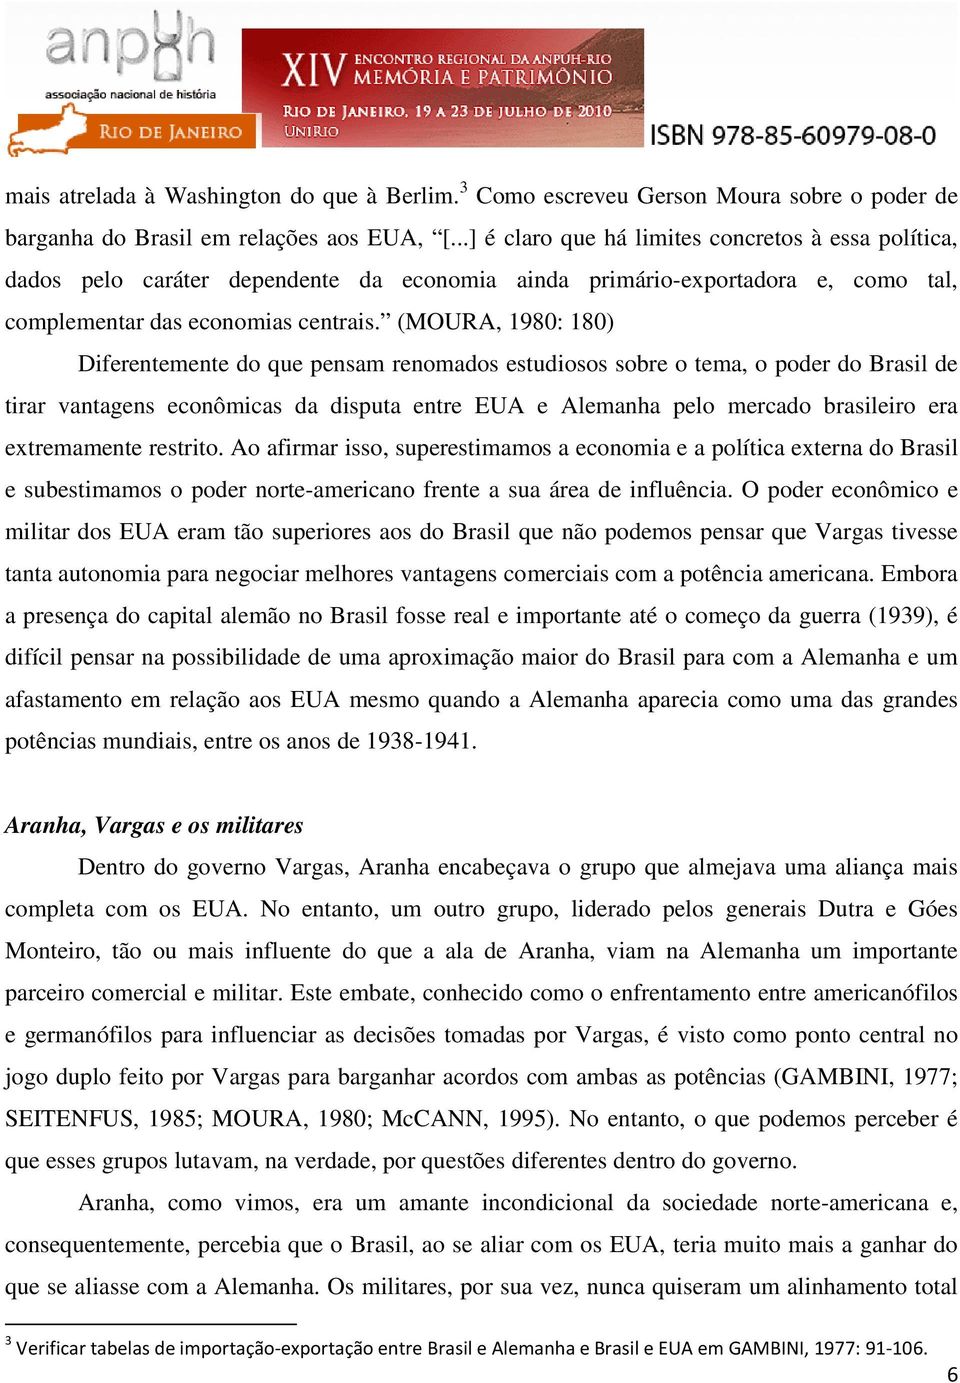 (MOURA, 1980: 180) Diferentemente do que pensam renomados estudiosos sobre o tema, o poder do Brasil de tirar vantagens econômicas da disputa entre EUA e Alemanha pelo mercado brasileiro era